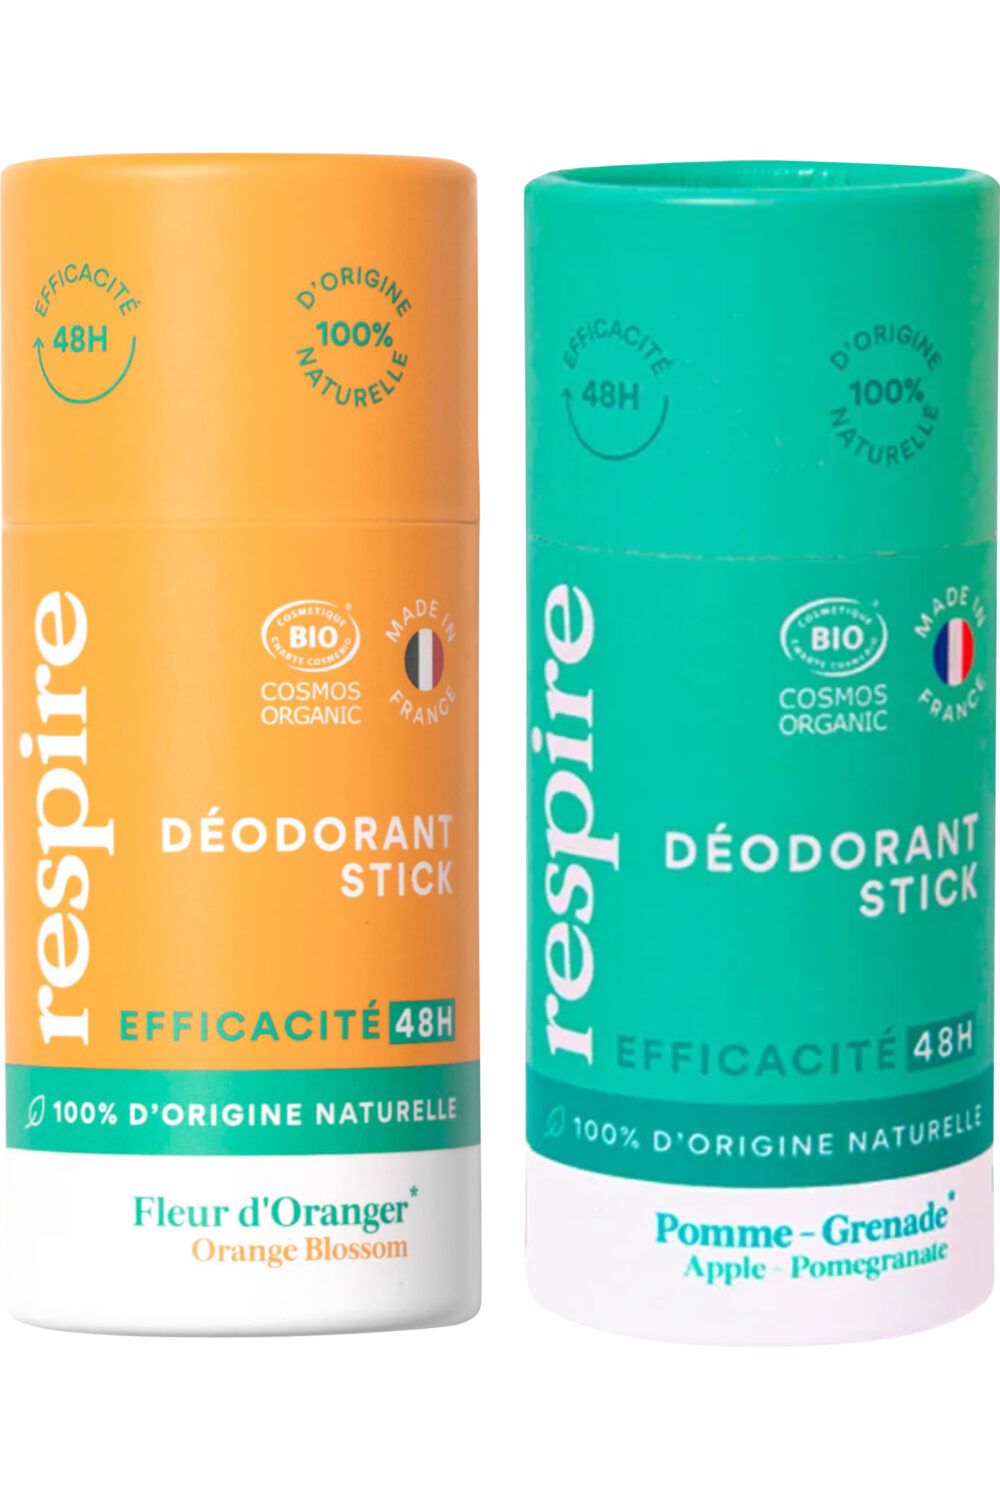 Respire - Duo de déodorants solides Fleur d'Oranger & Pomme Grenade